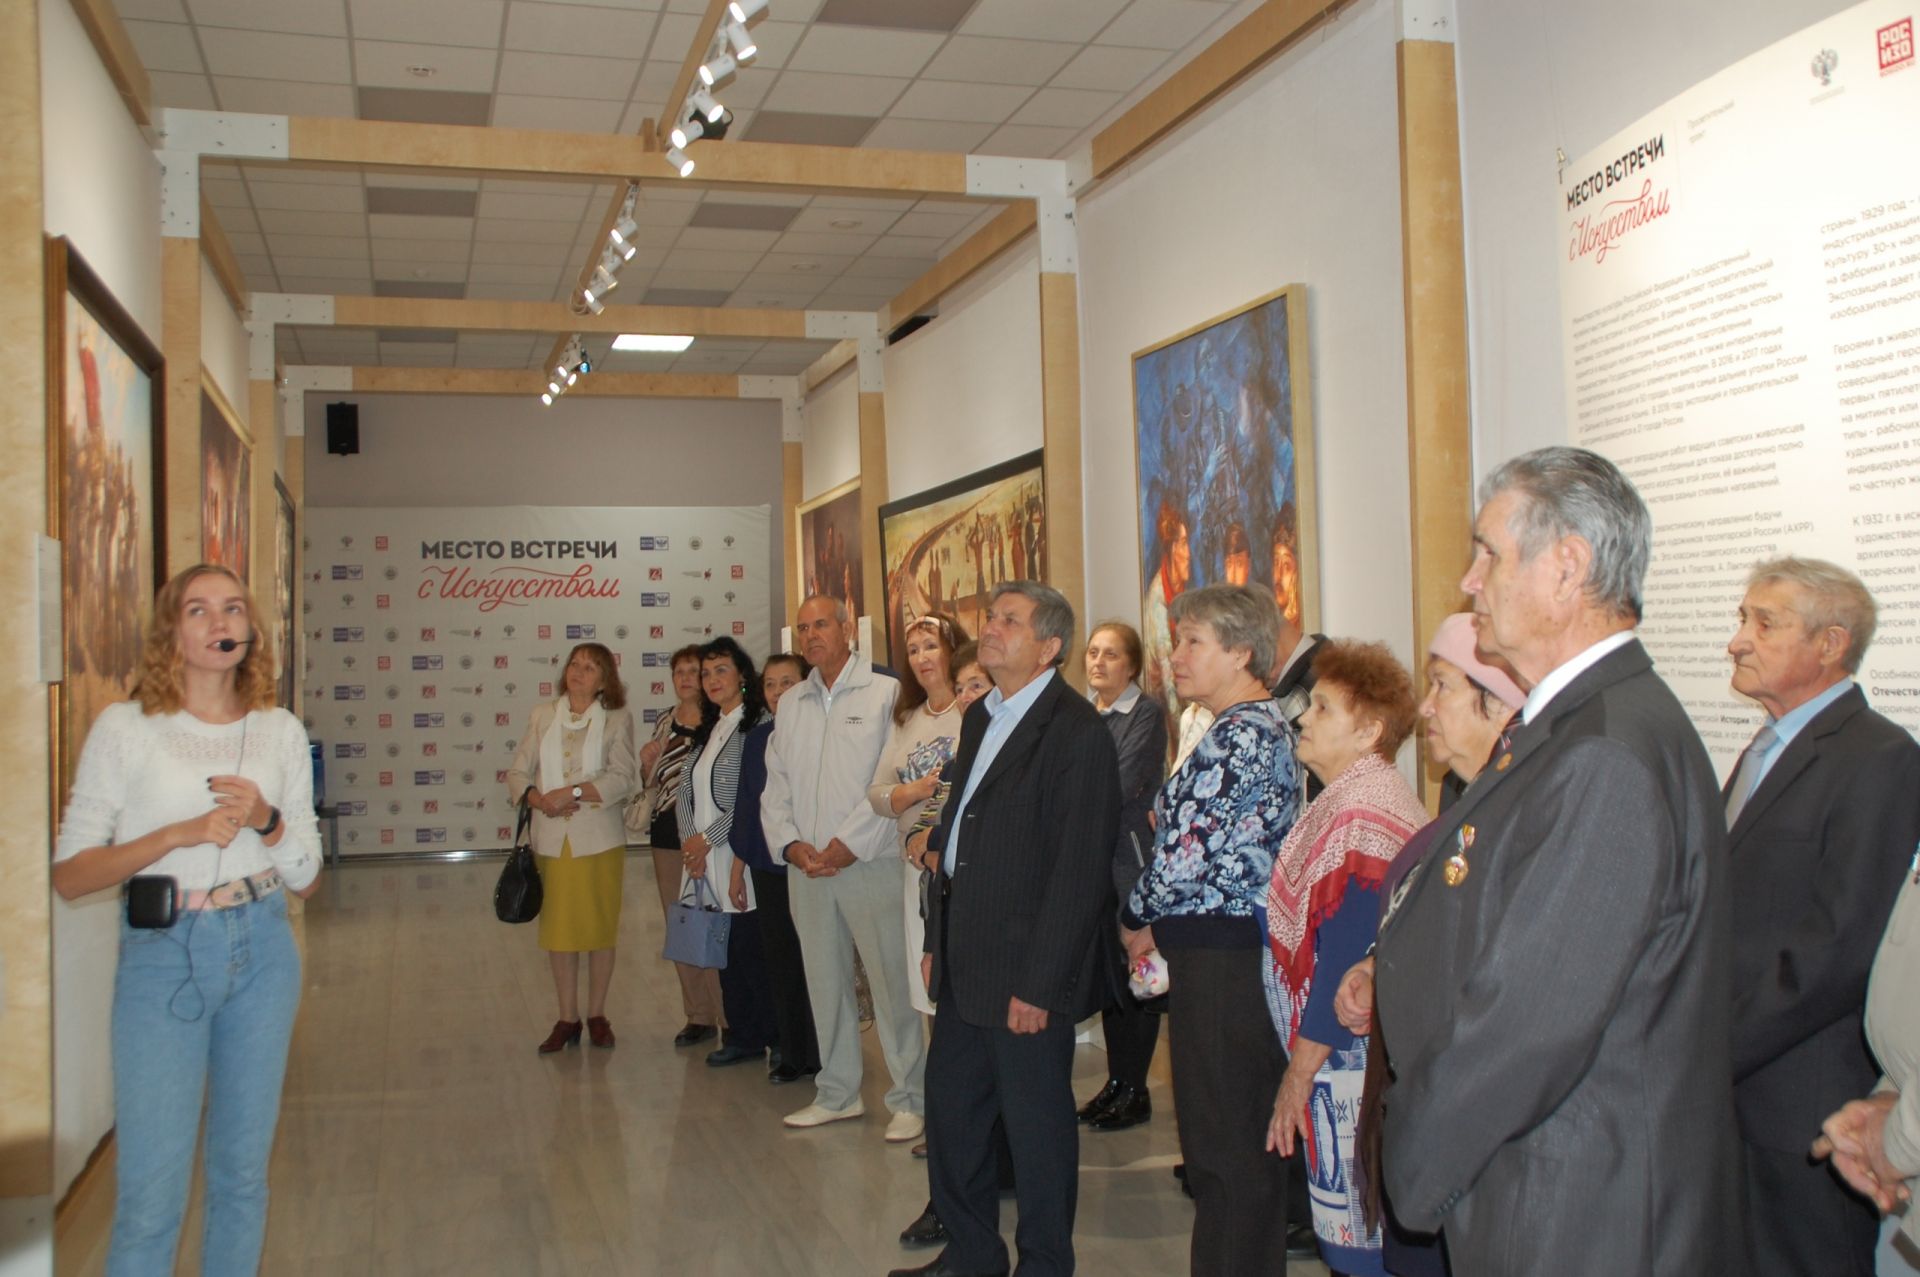 Заинские пенсионеры посетили выставку "Место встречи с искусством"